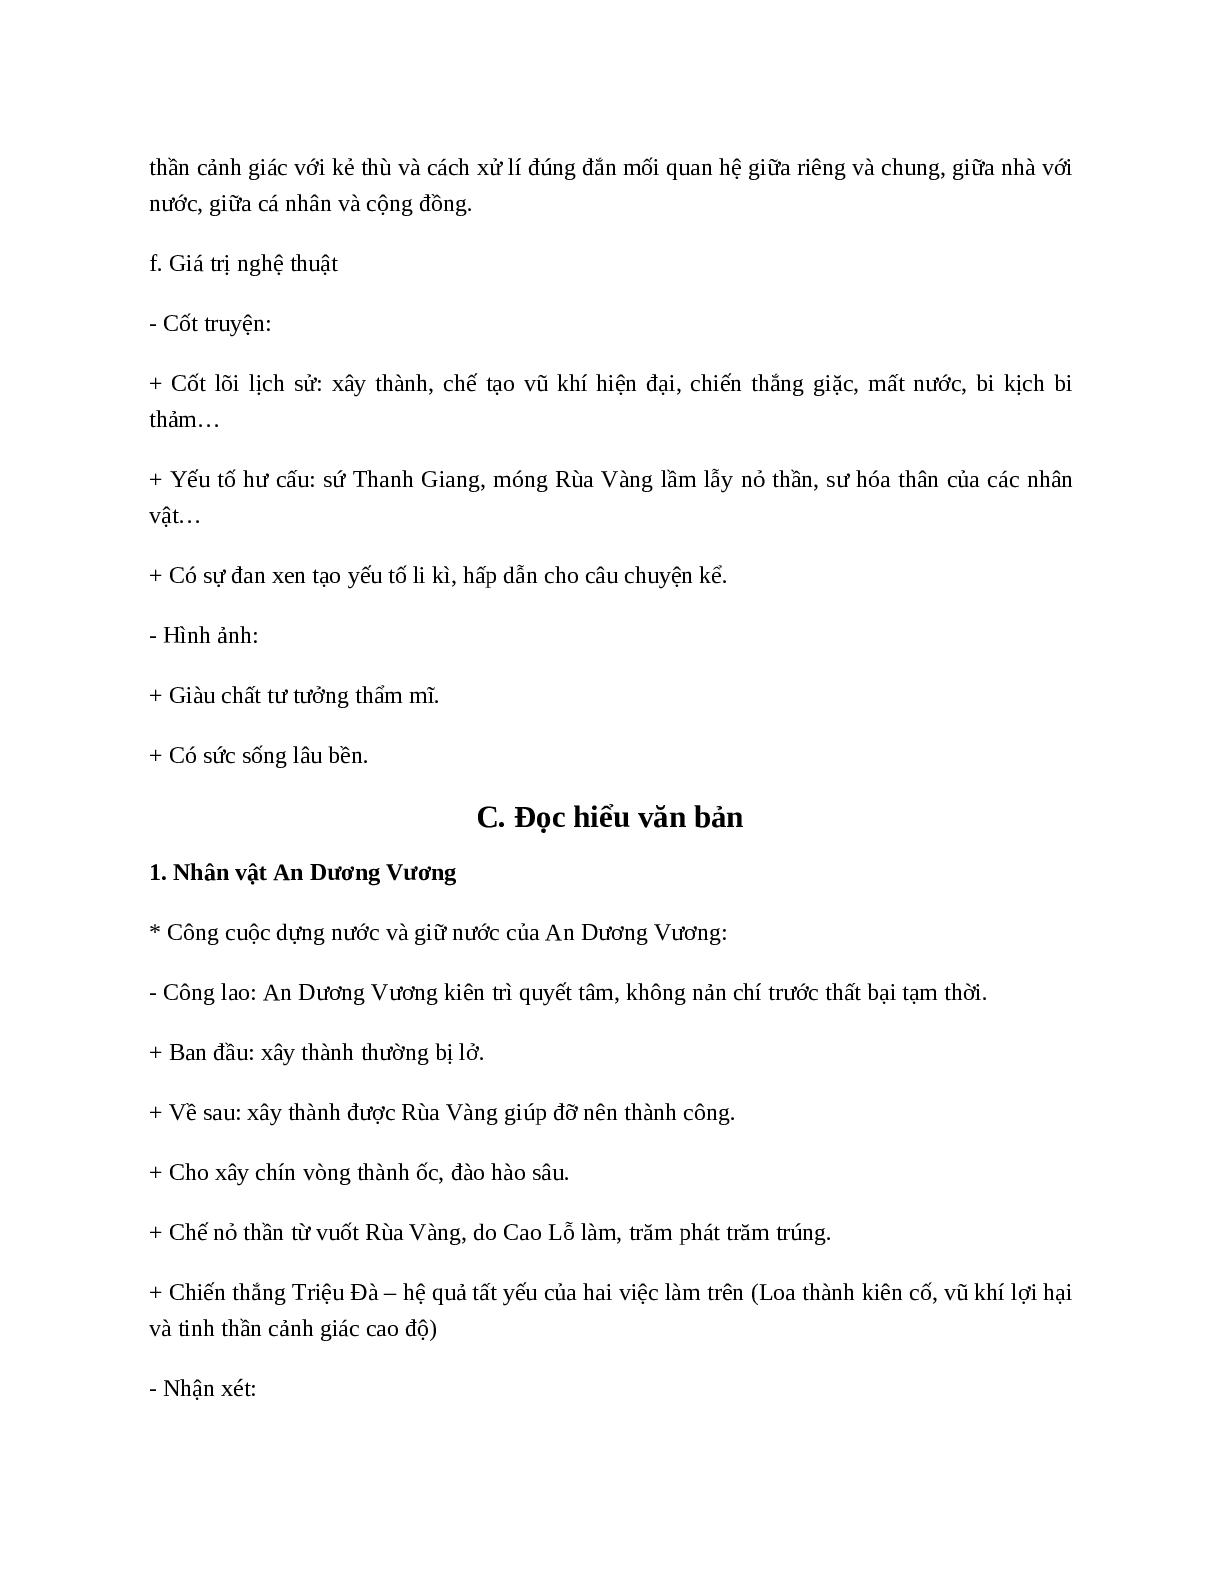 Truyện An Dương Vương và Mị Châu - Trọng Thủy - Tác giả tác phẩm - Ngữ văn lớp 10 (trang 3)